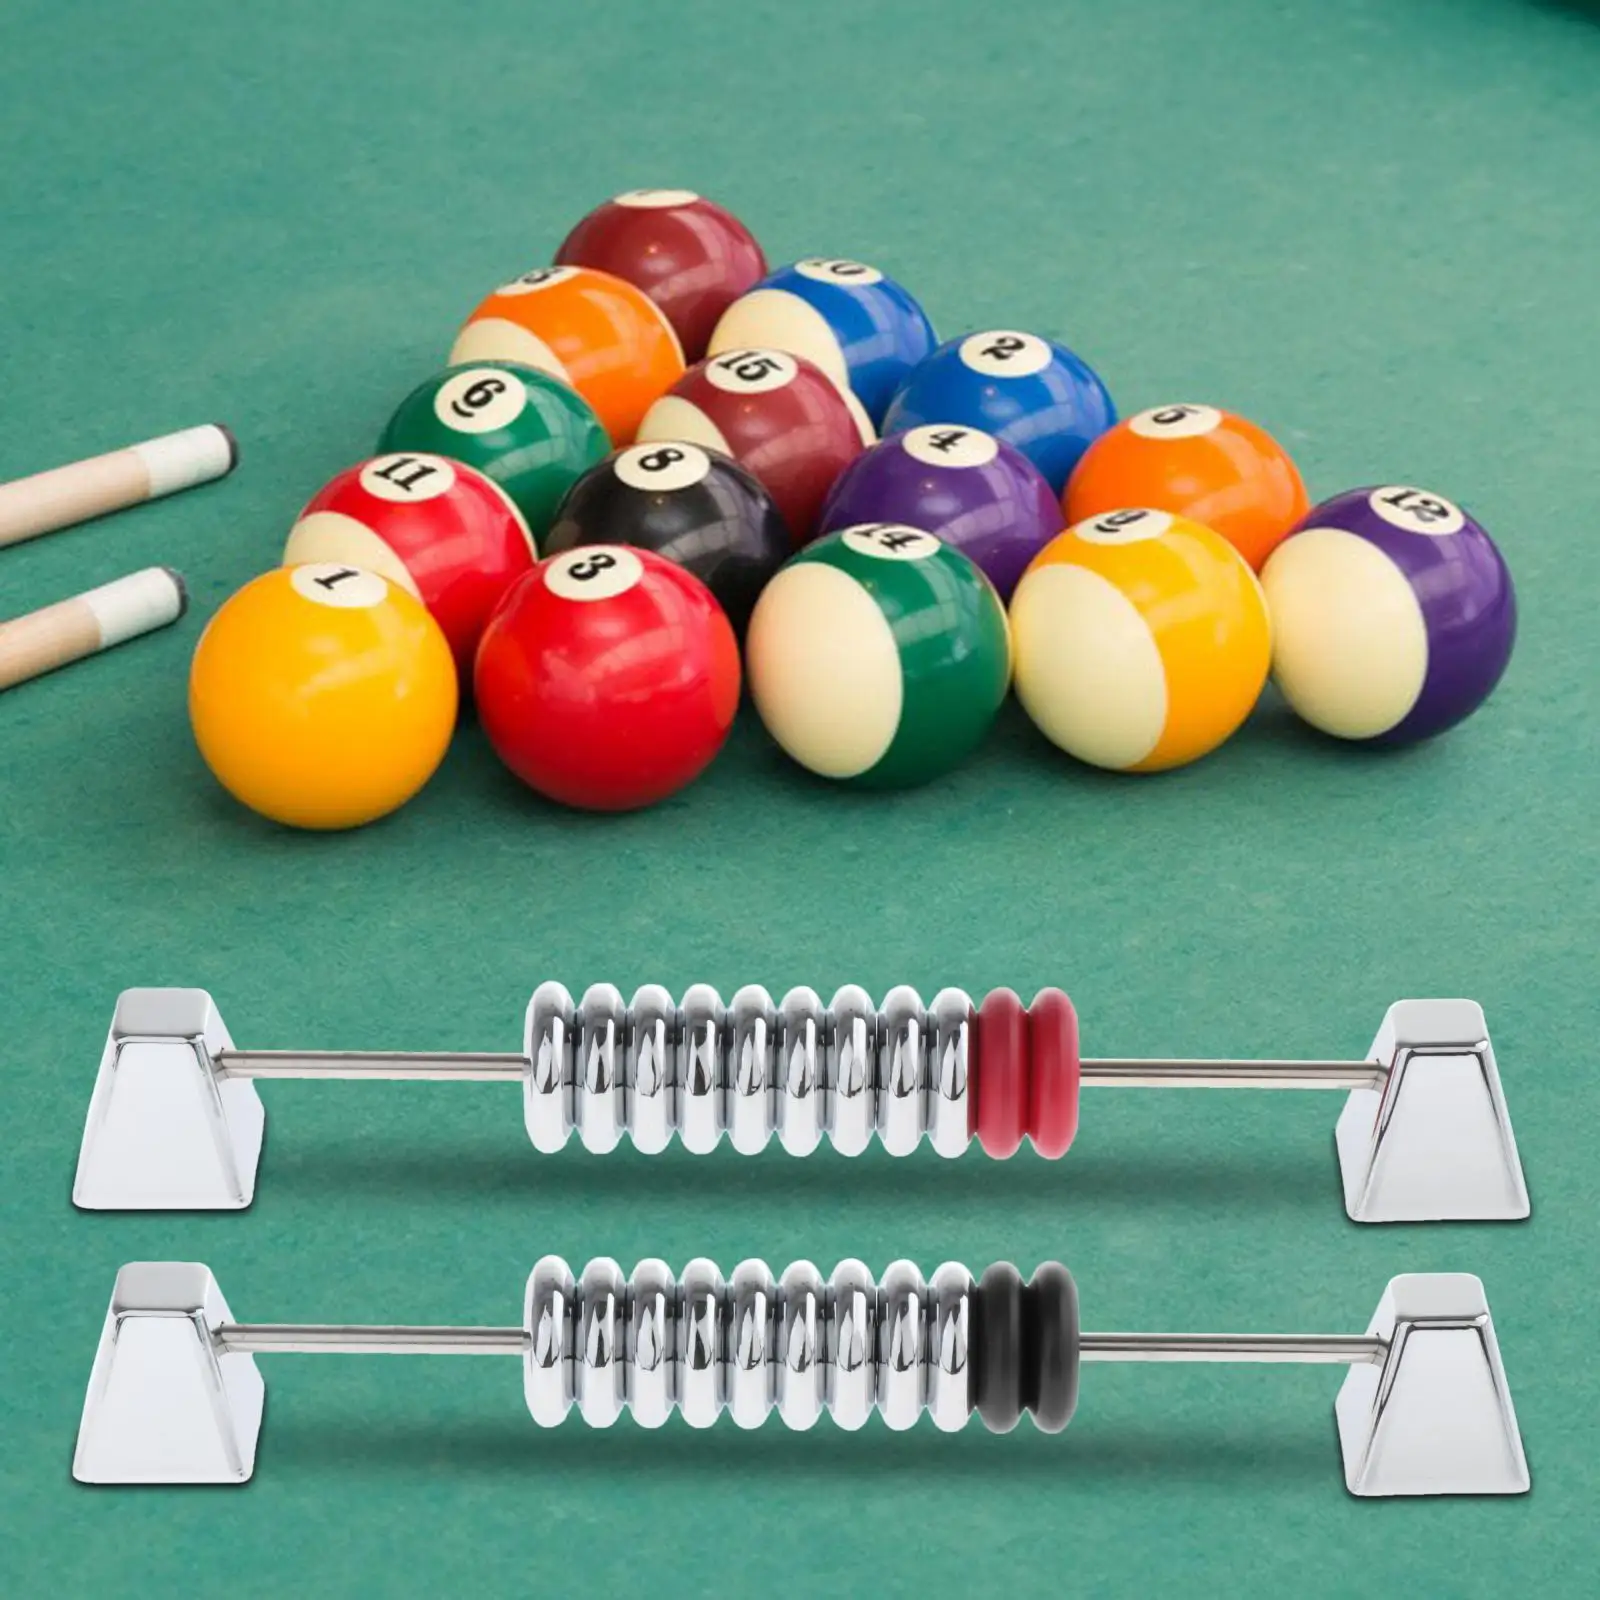 2x Shuffleboard Score Keeper Snooker Billiard Score Board for Tabletop Games Shuffleboard Tables